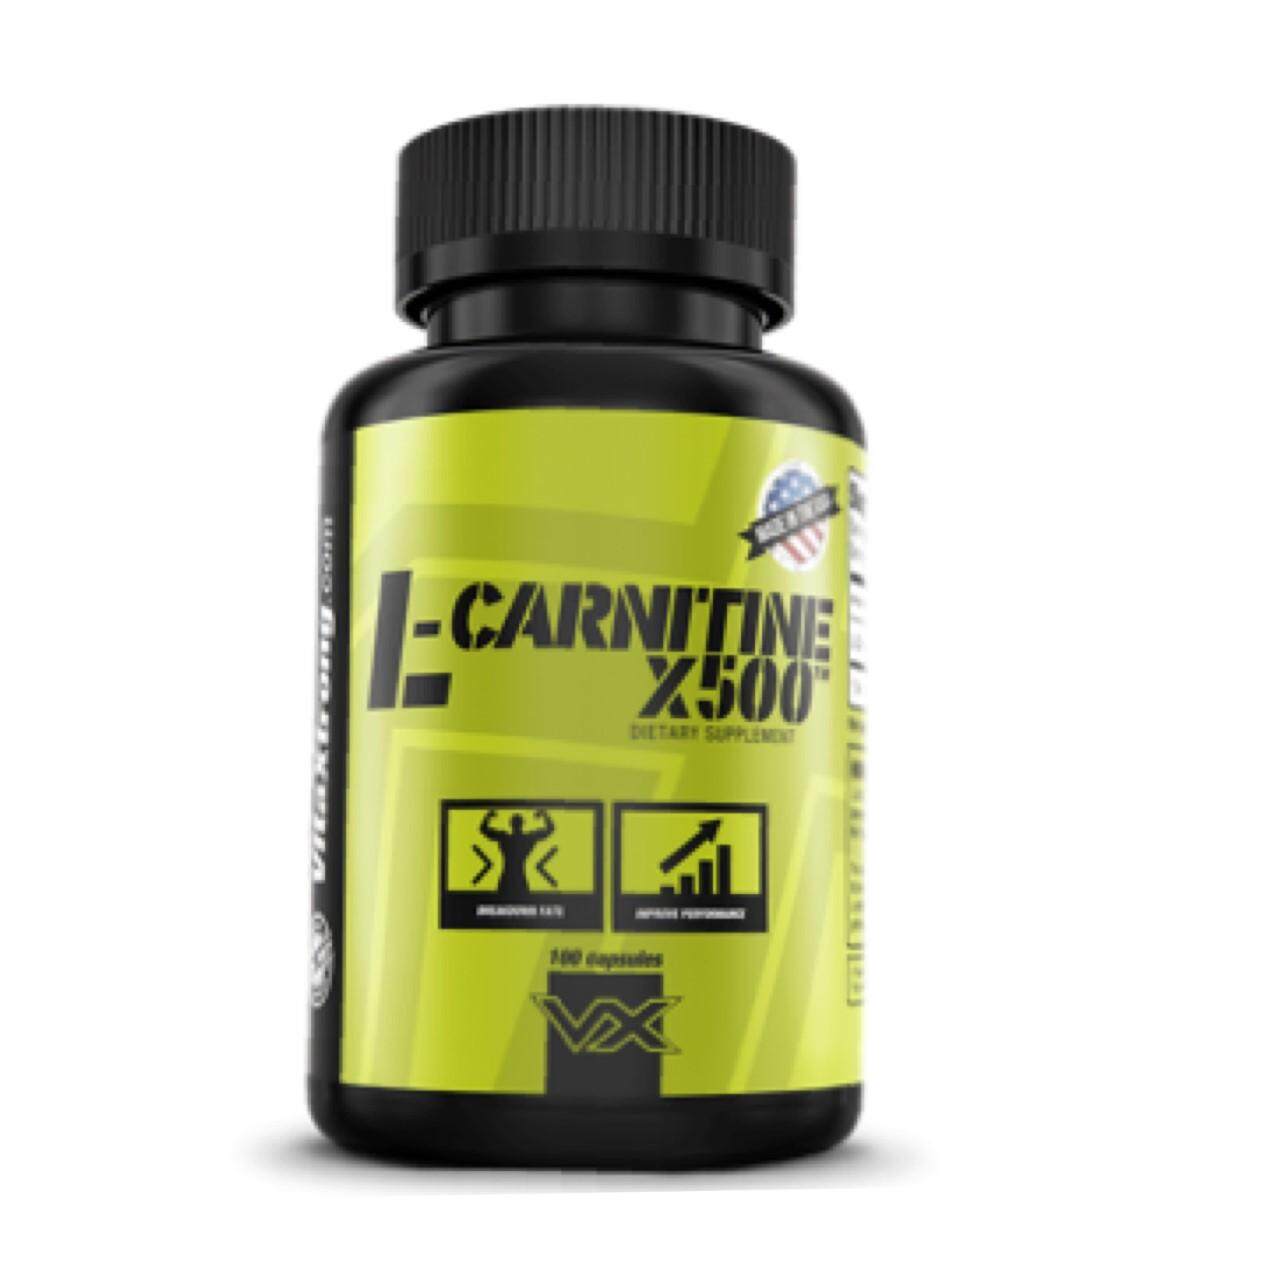 L-carnitine แอลคาร์นิทีน 500 มิลลิกรัม เร่งการผลาญไขมัน แอลคาร์เนทีน 100 แคปซูล ช่วยลดไขมัน FAT BURNER แอลคาร์นีทีน